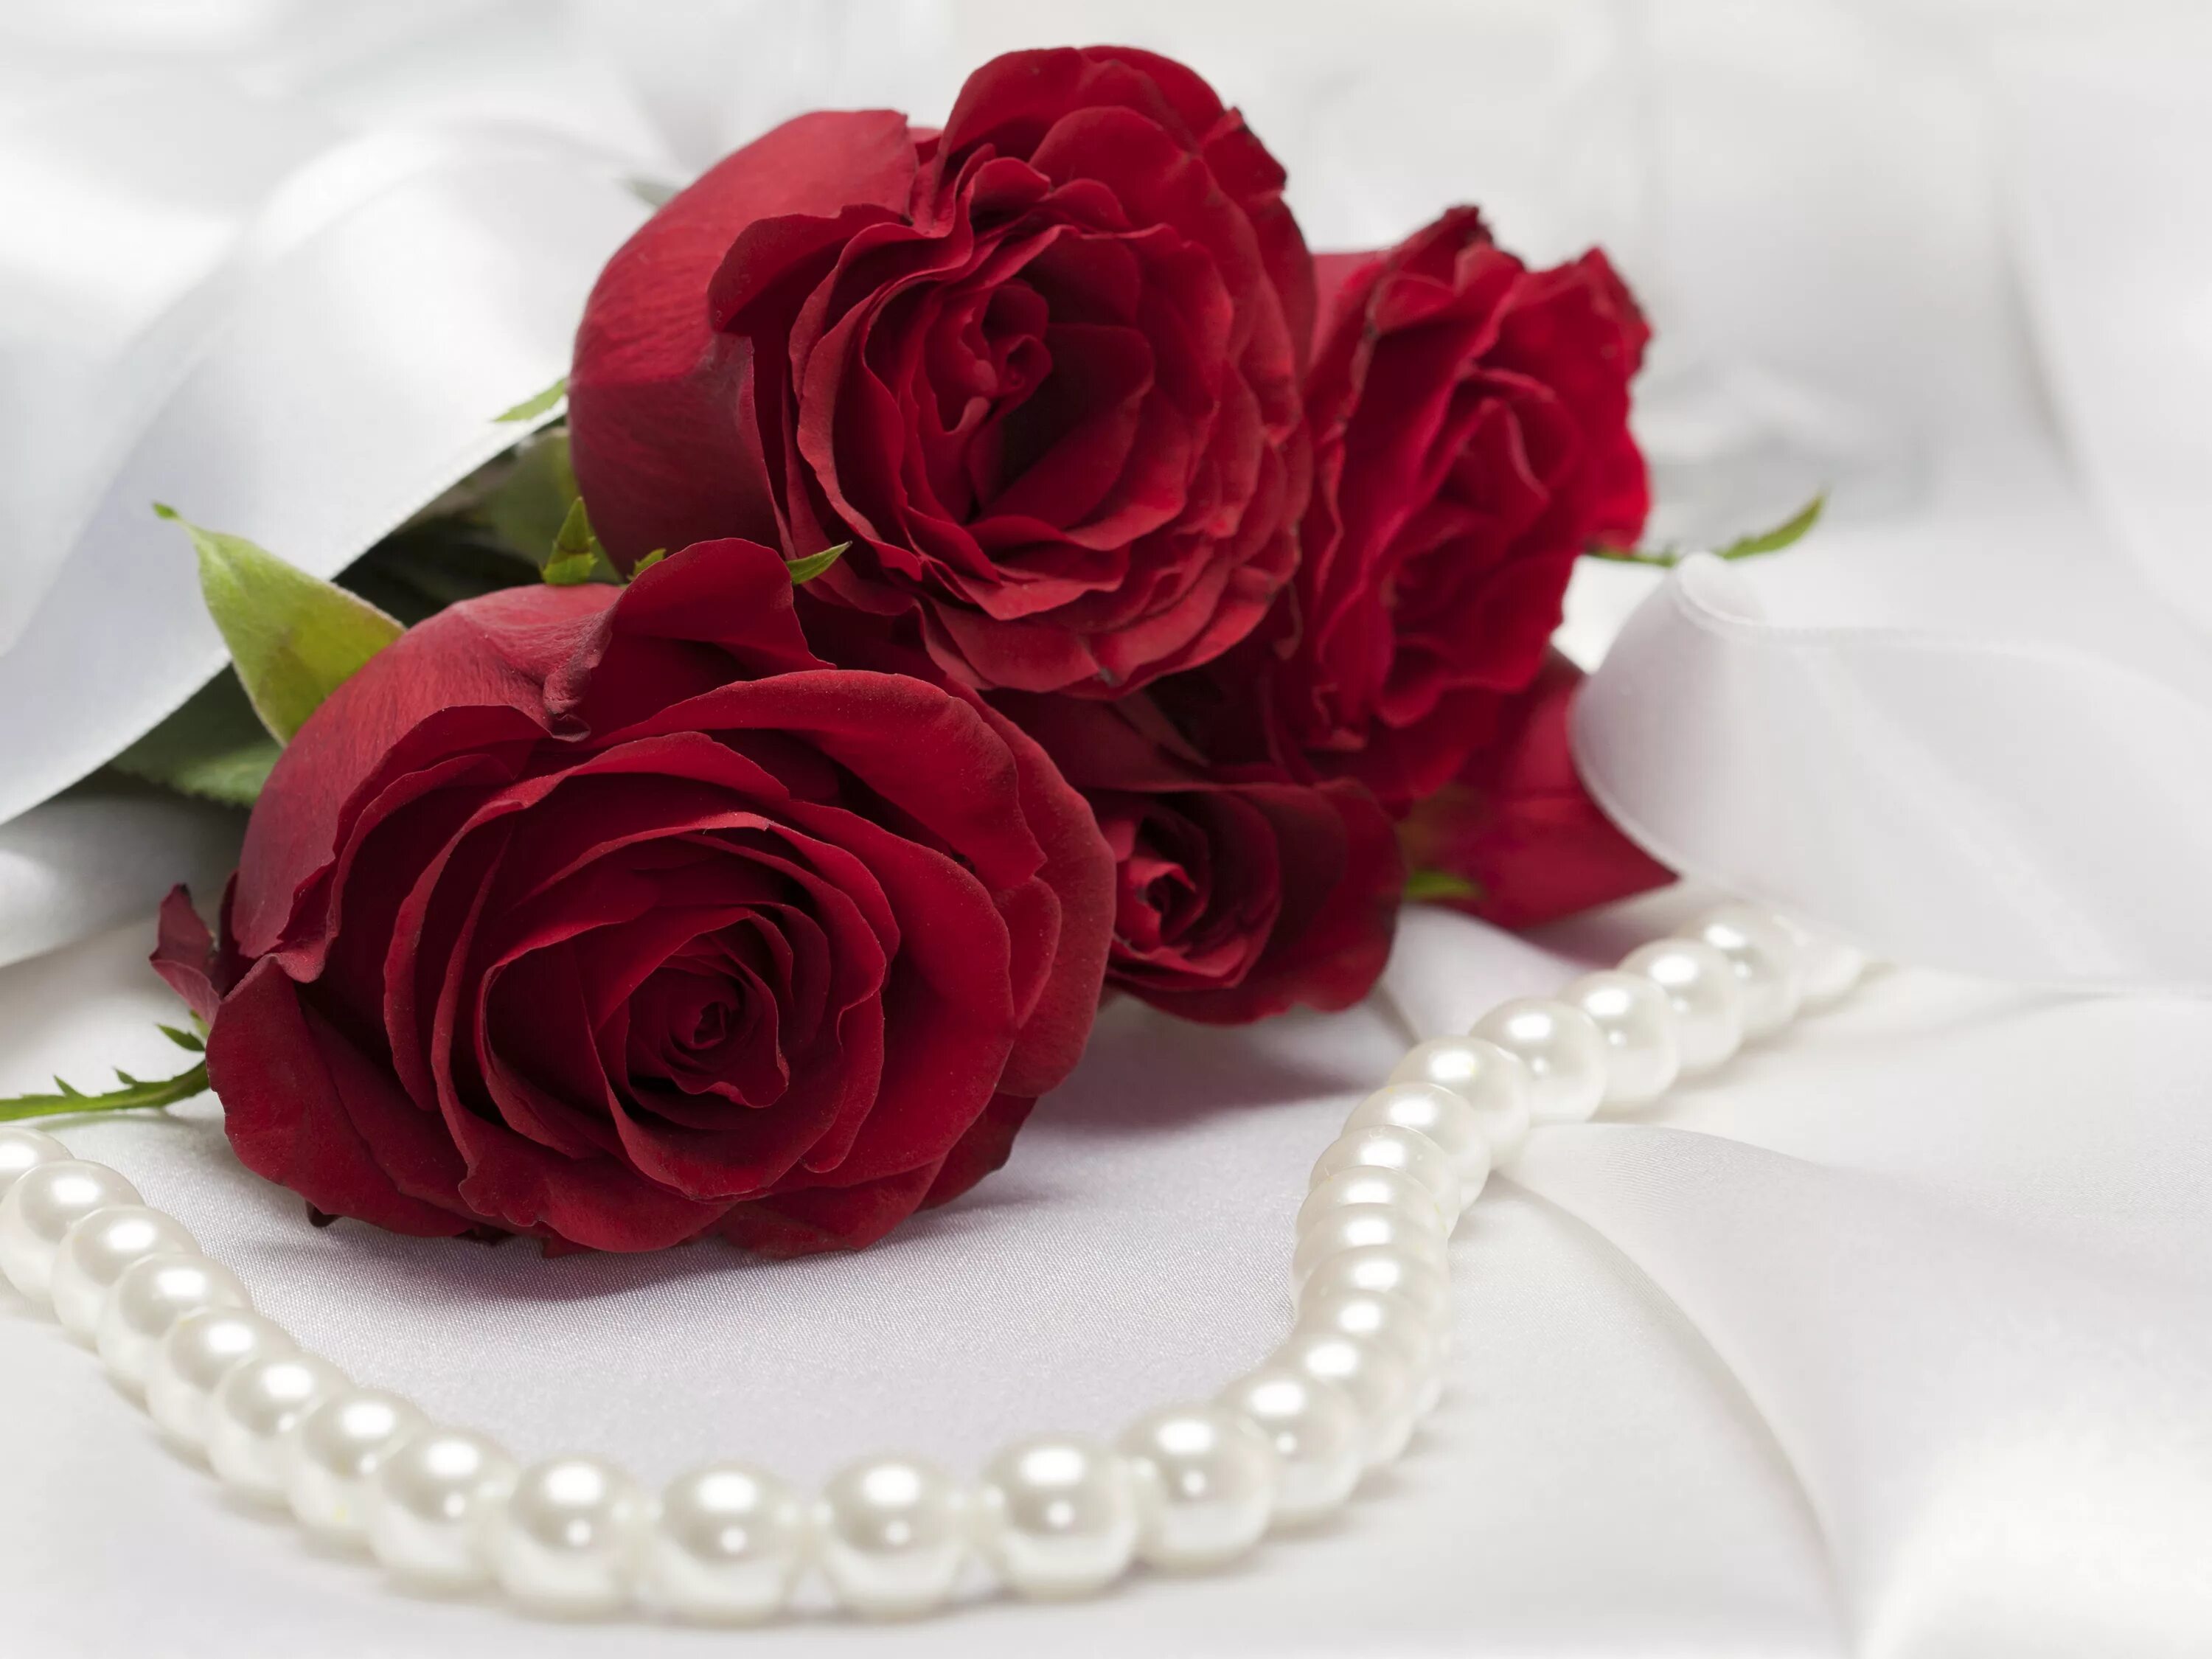 Букет для любимой женщины. Красивый букет роз для девушки. Красивые цветы для любимой девушки.